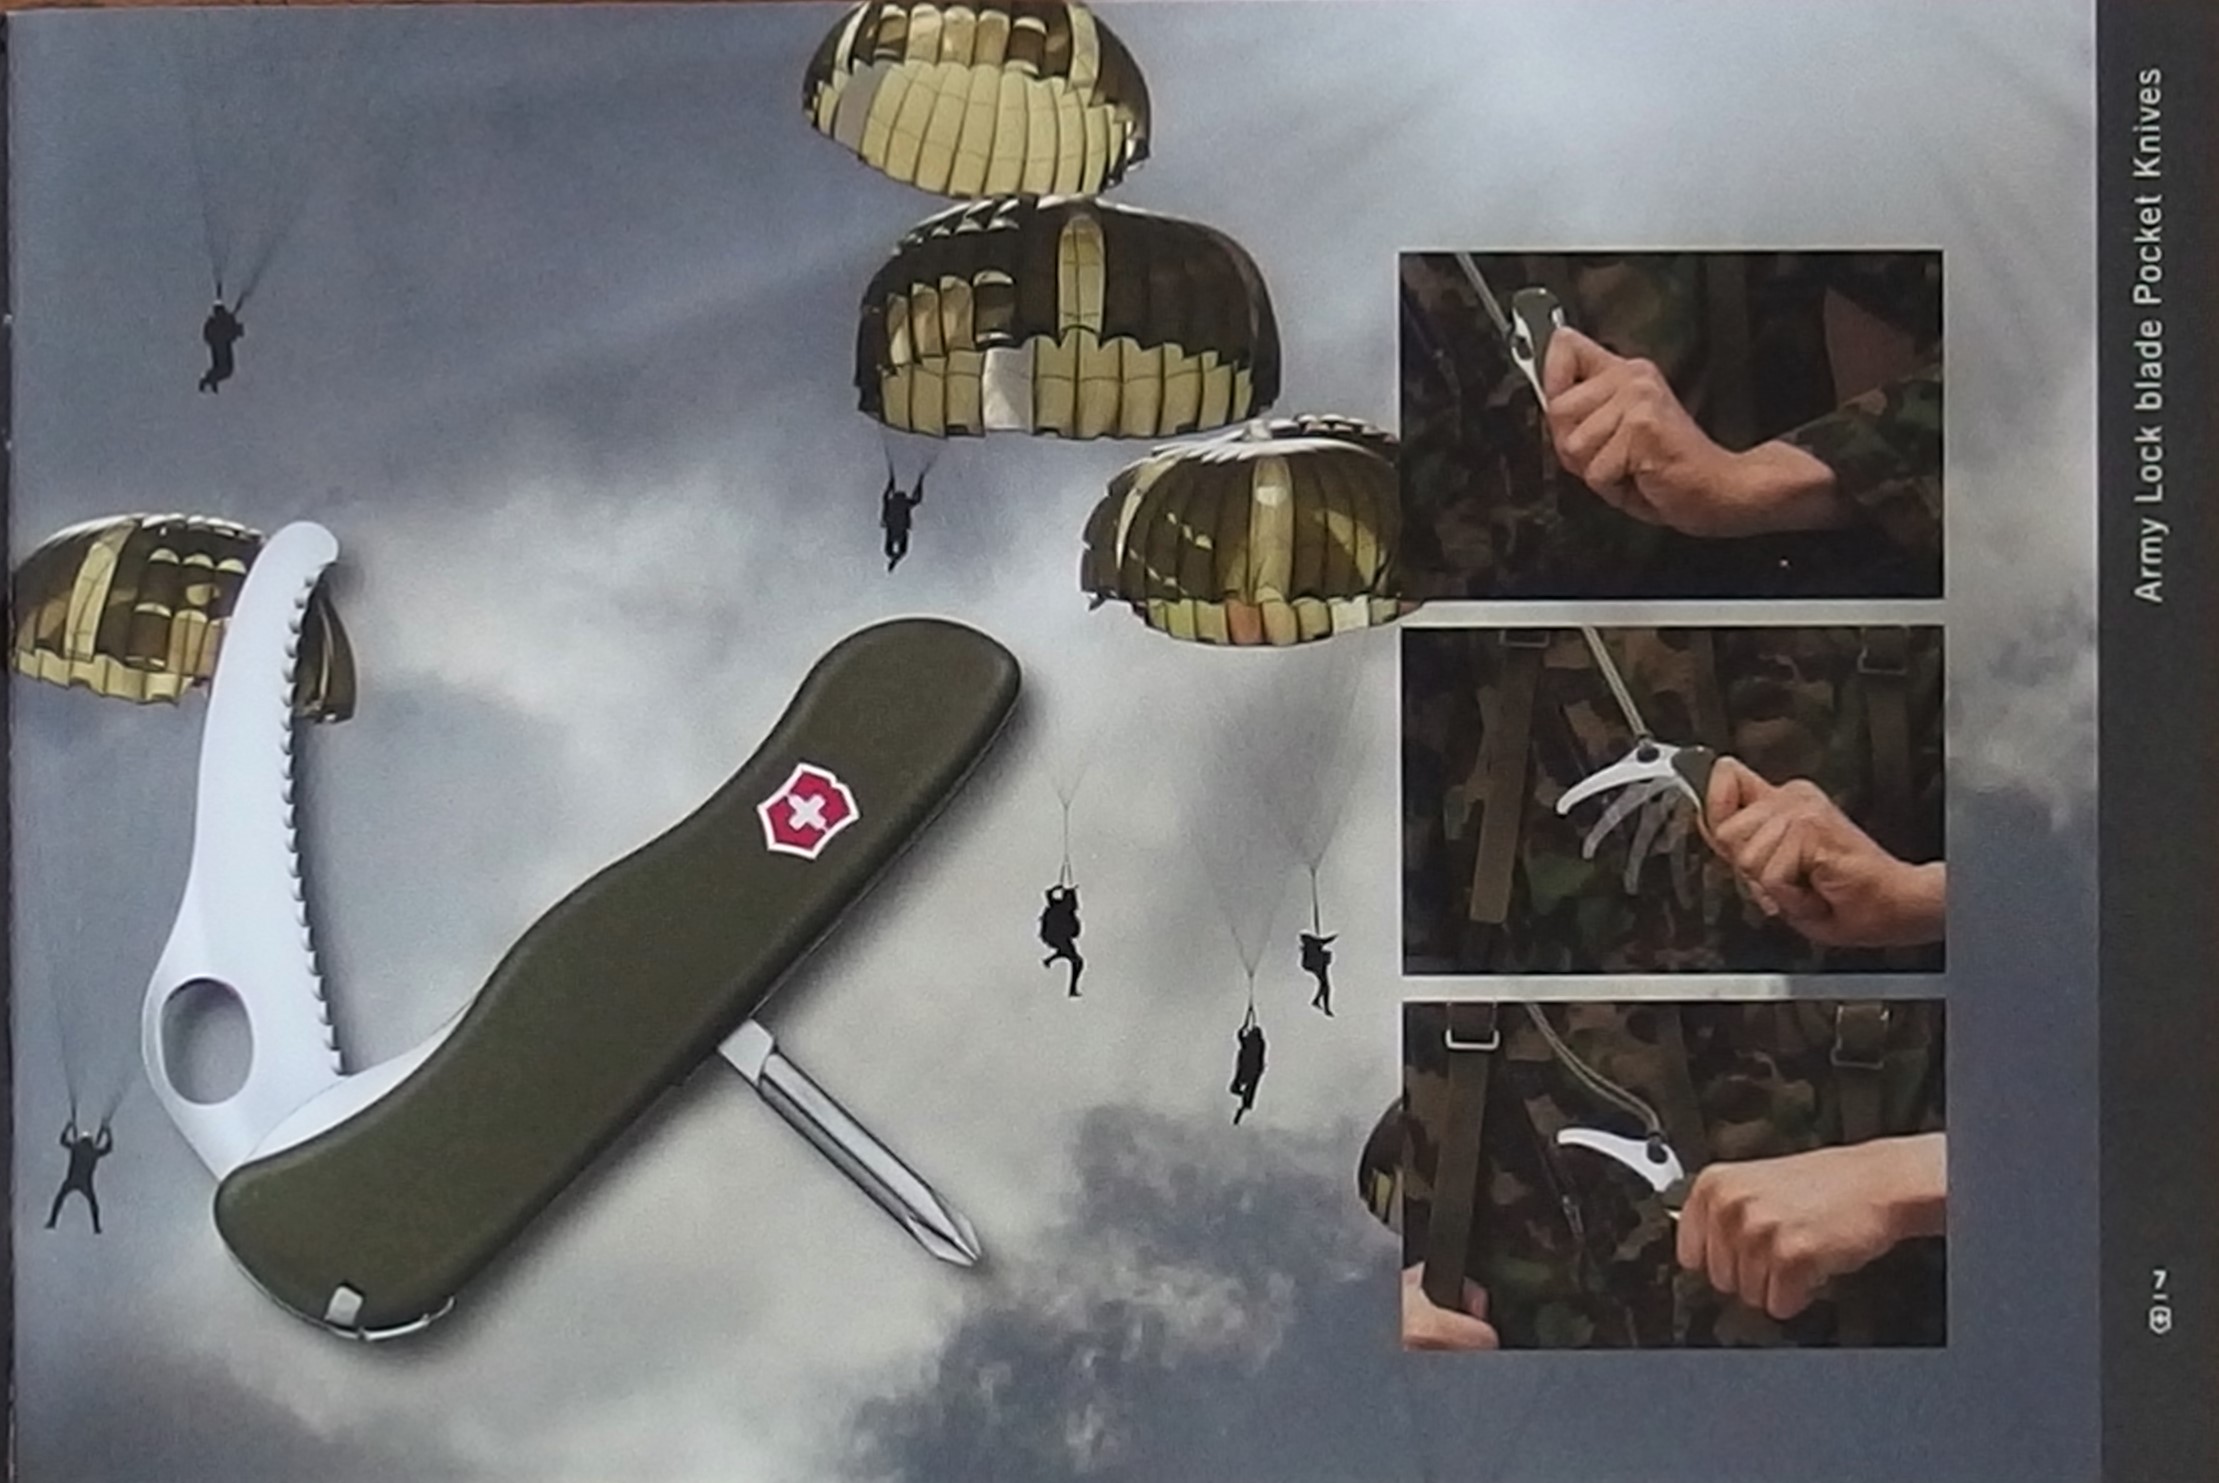 Parachute Knife - marketing image. Image credit EMZ